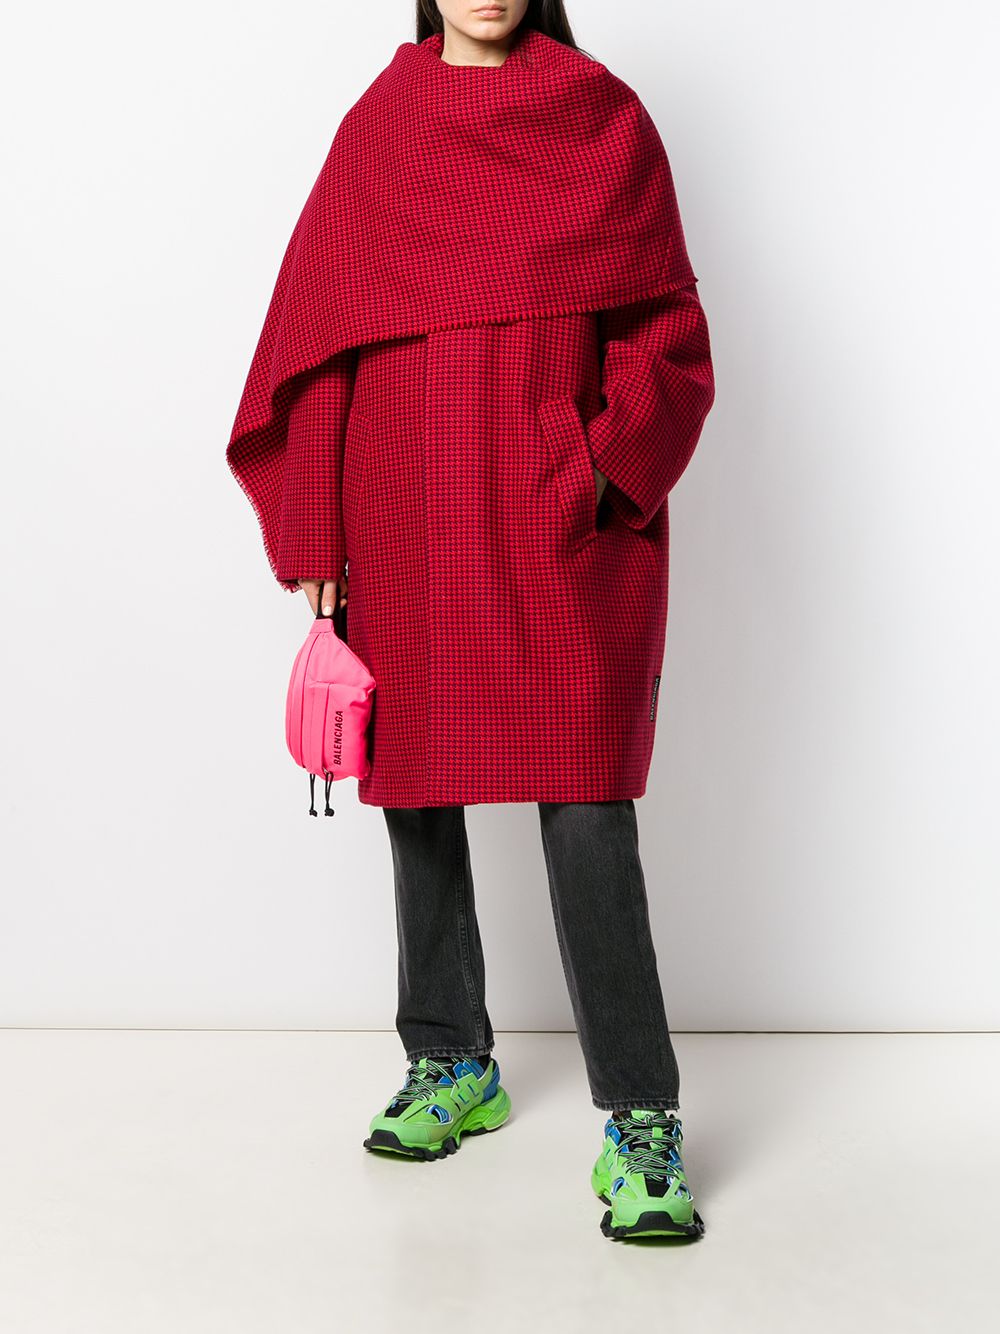 фото Balenciaga пальто в ломаную клетку с шарфом